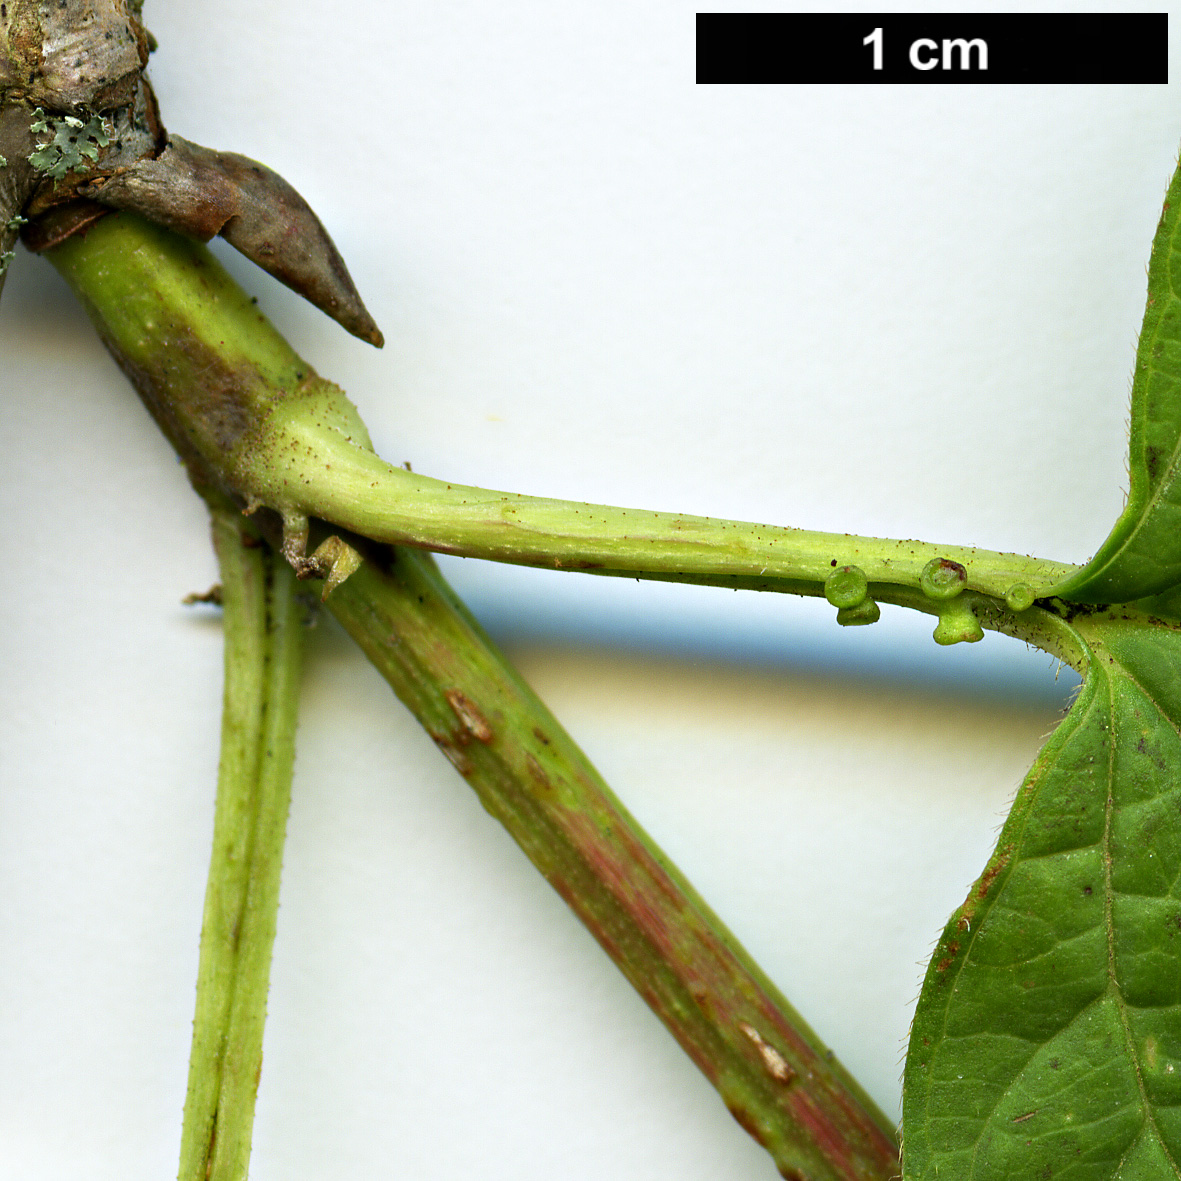 High resolution image: Family: Adoxaceae - Genus: Viburnum - Taxon: trilobum